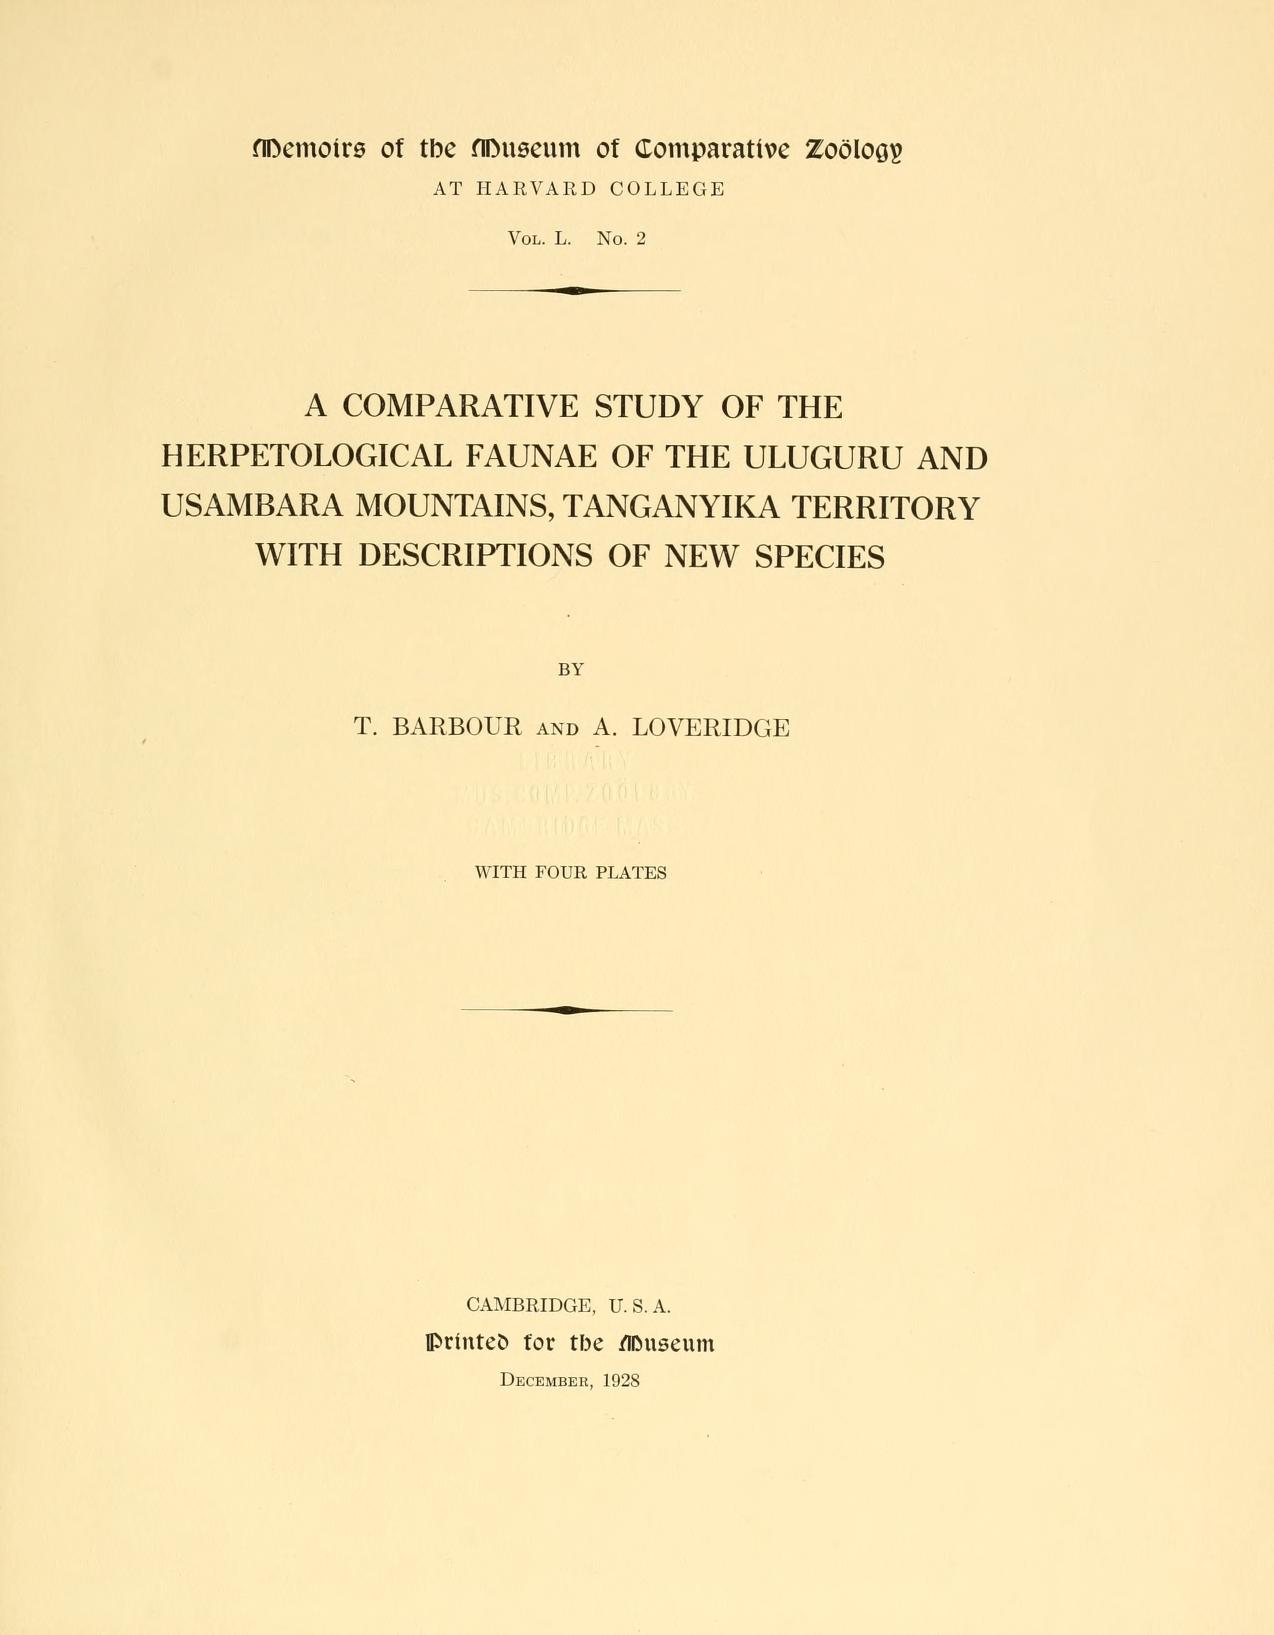 Media type: text, Barbour and Loveridge 1928 Description: MCZ Memoirs Vol. L No. 2